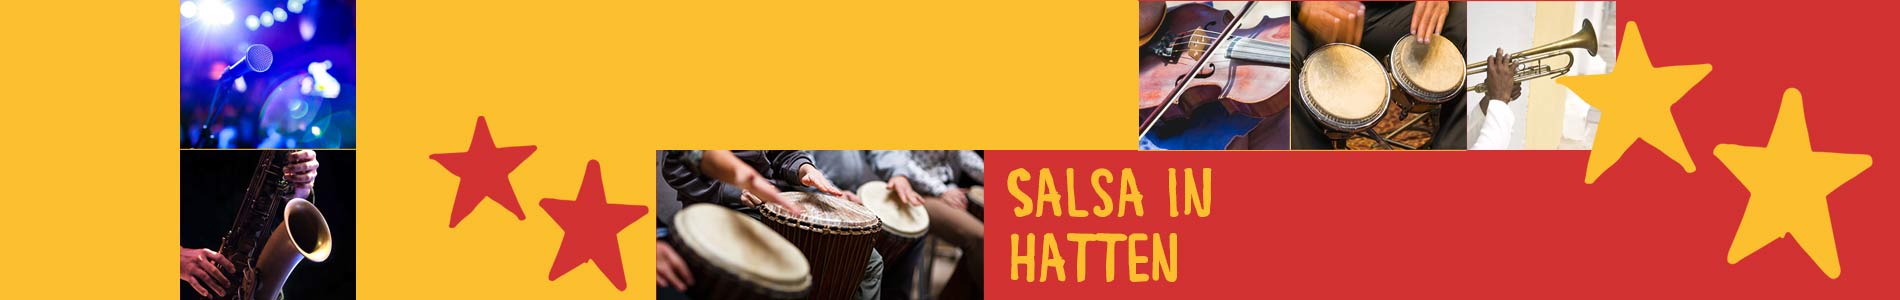 Salsa in Hatten – Salsa lernen und tanzen, Tanzkurse, Partys, Veranstaltungen